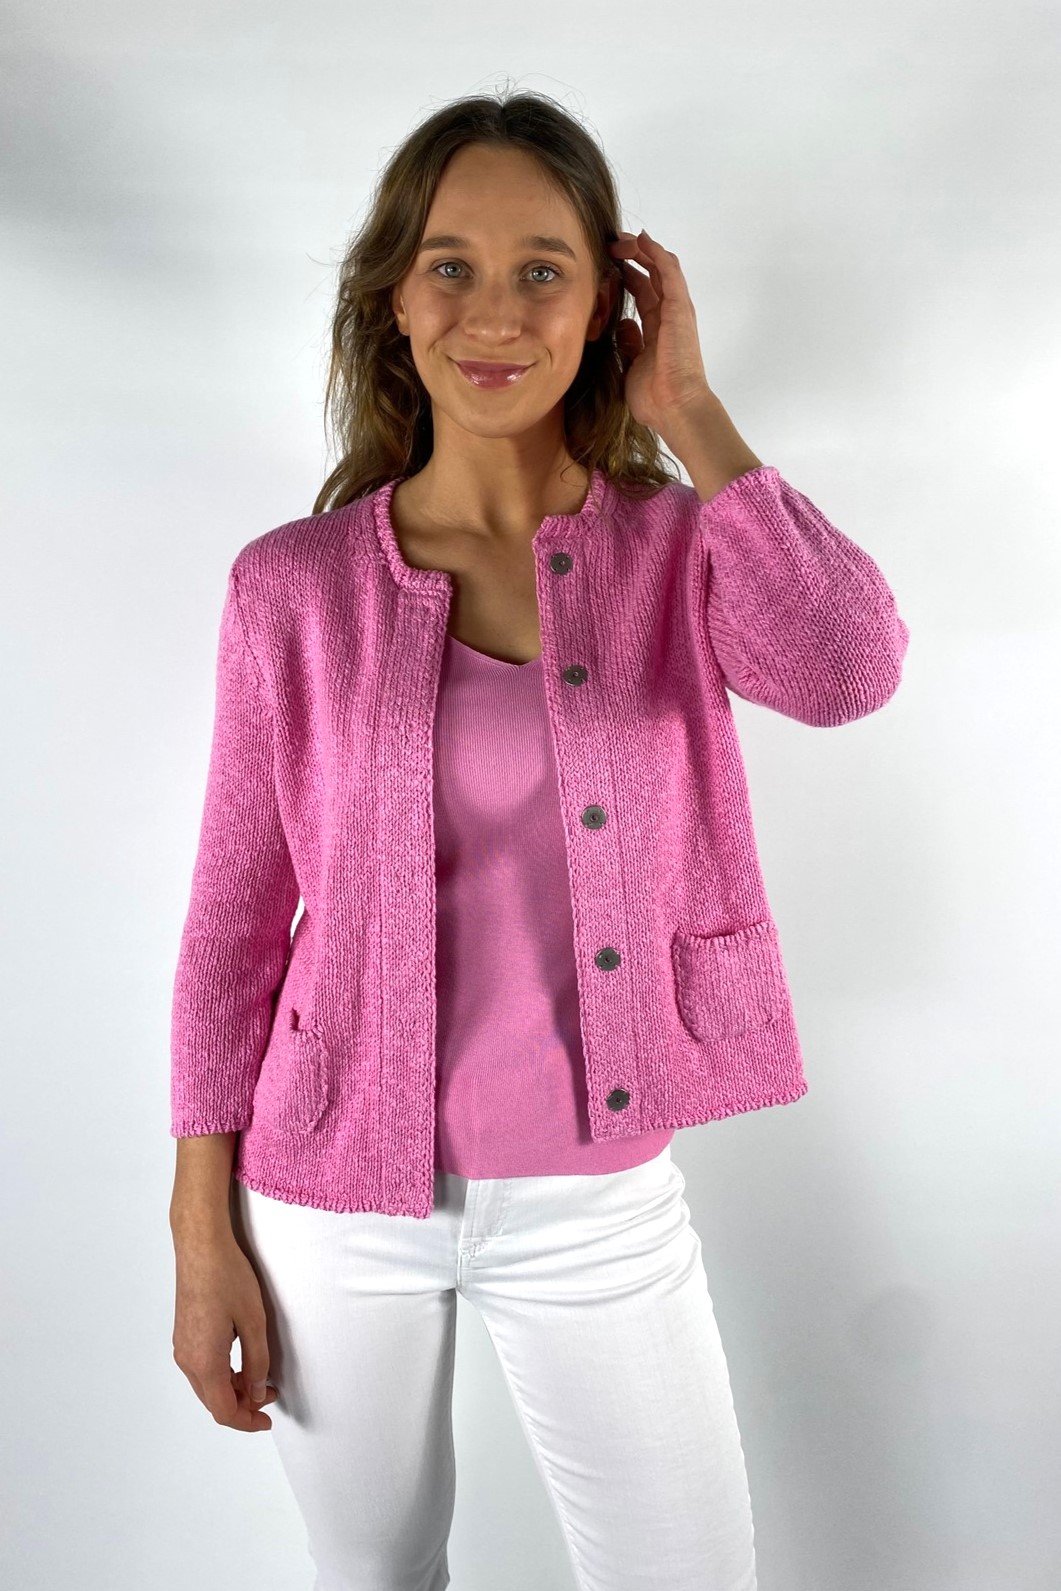 Vest katoen linnen in de kleur pink van het merk Anneclaire